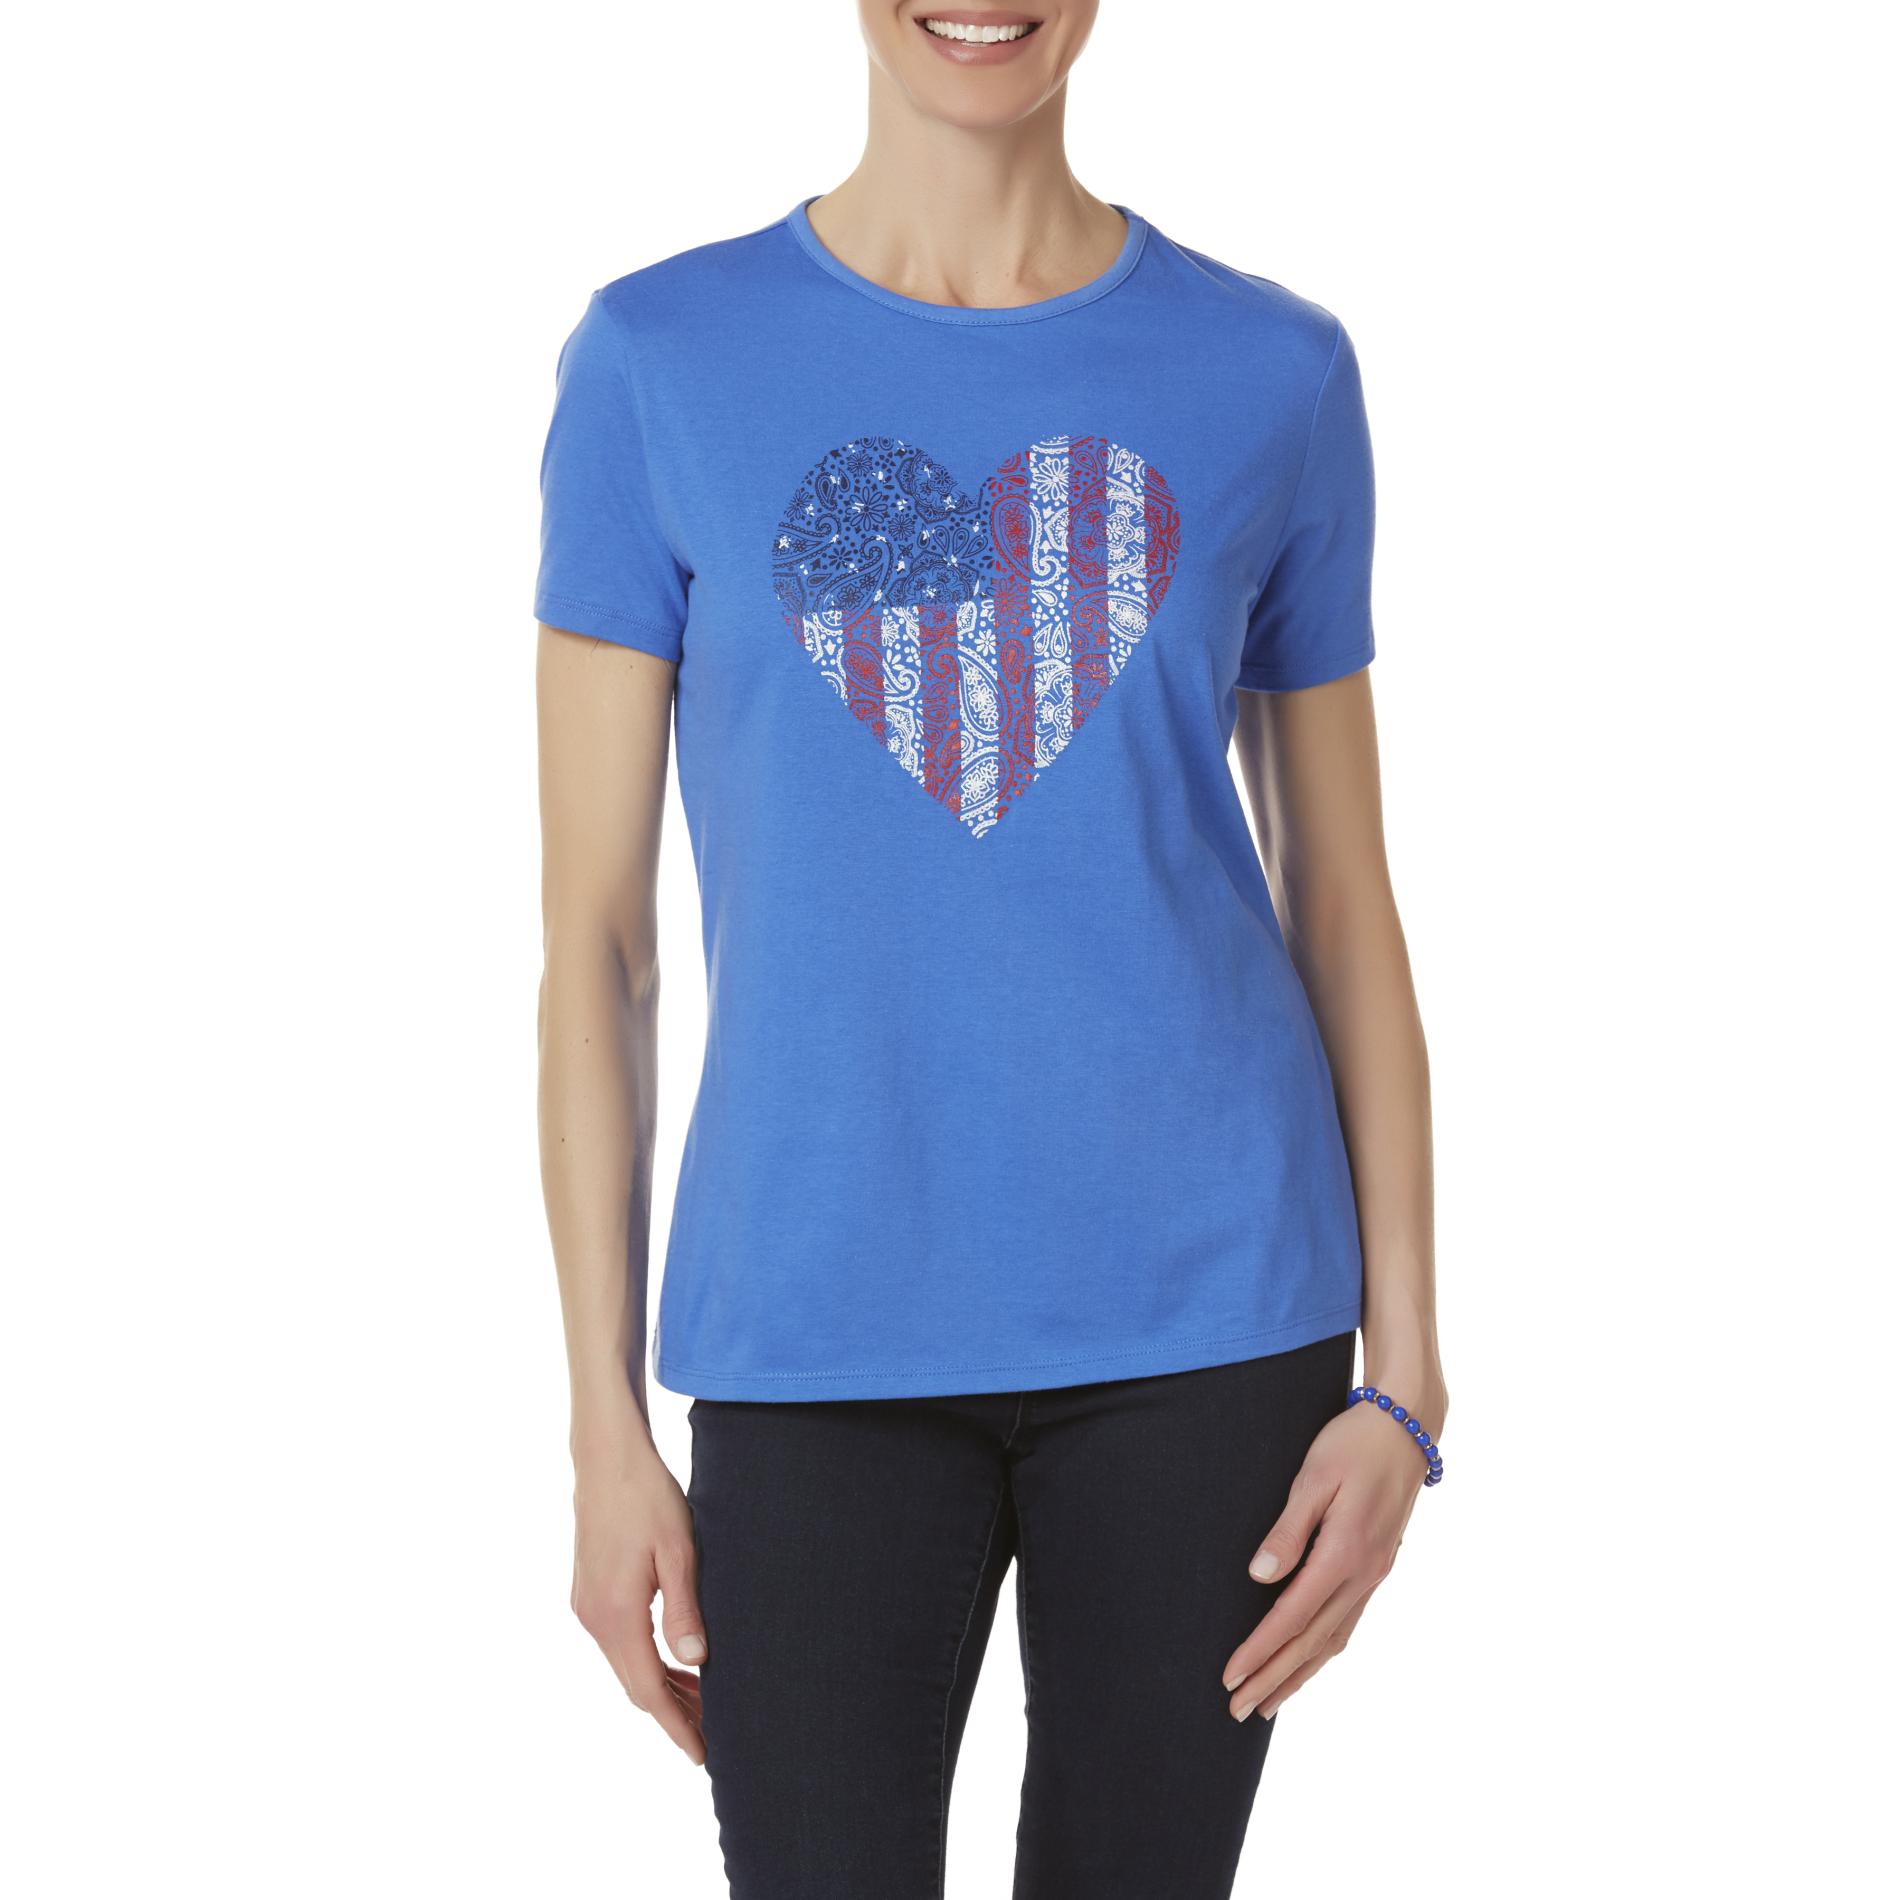 Laura Scott Women's Graphic T-Shirt - Red, White & Blue Heart